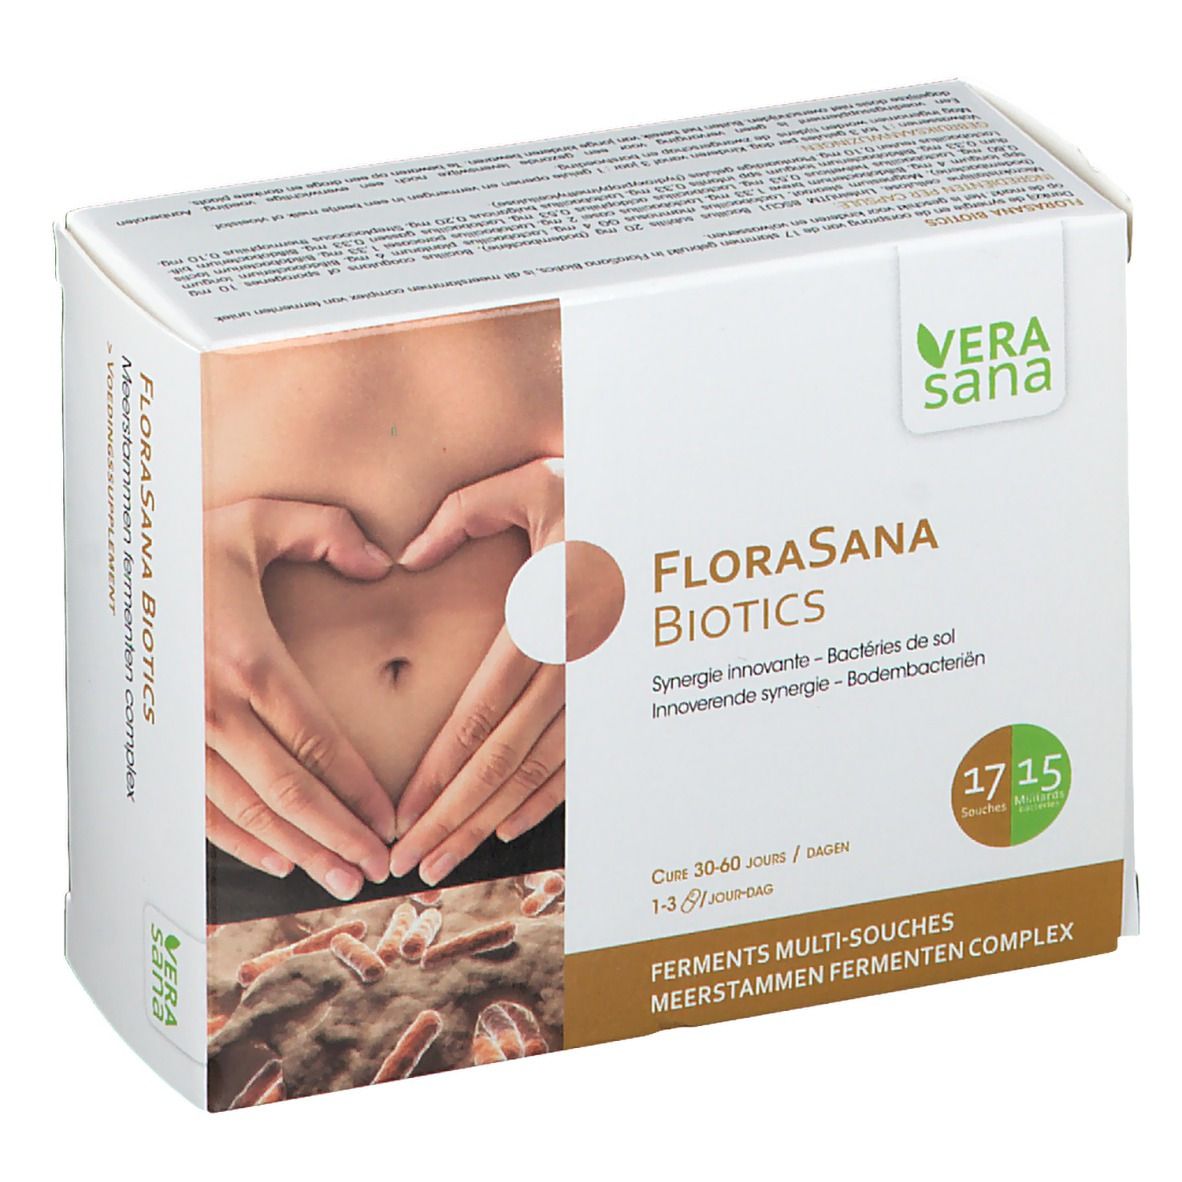 Vera sana FloraSana Biotics